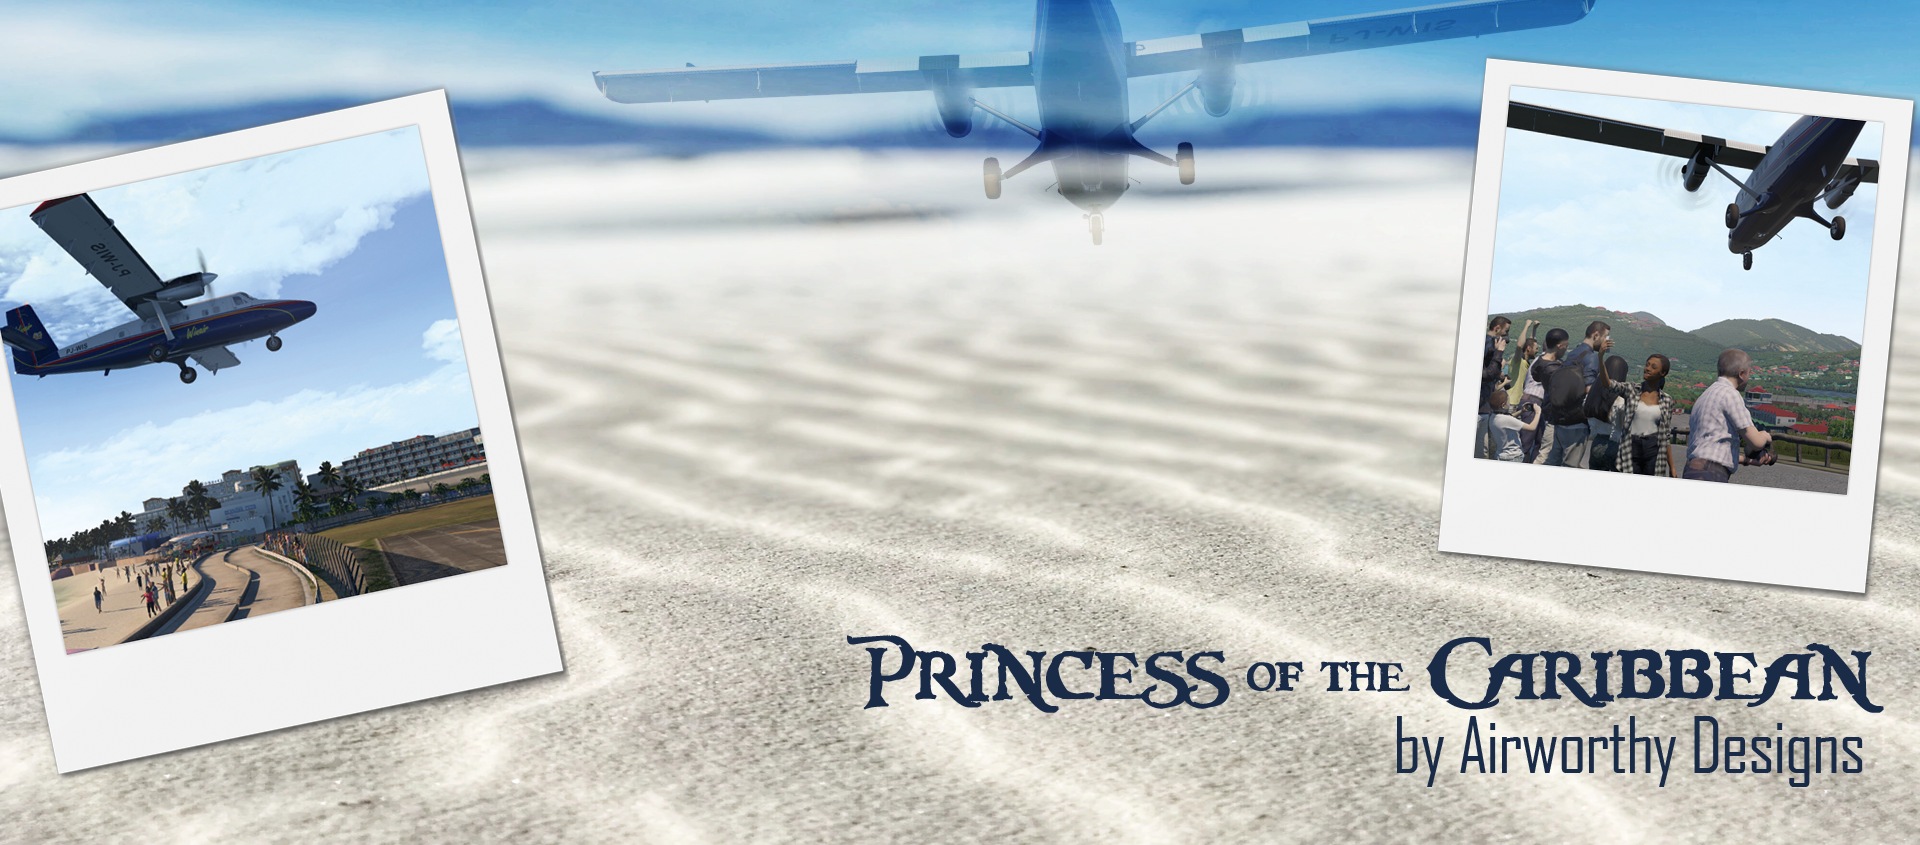 Artikelbild zu unserem Review von Airworthy Designs Princess of the Caribbean für X-Plane 11